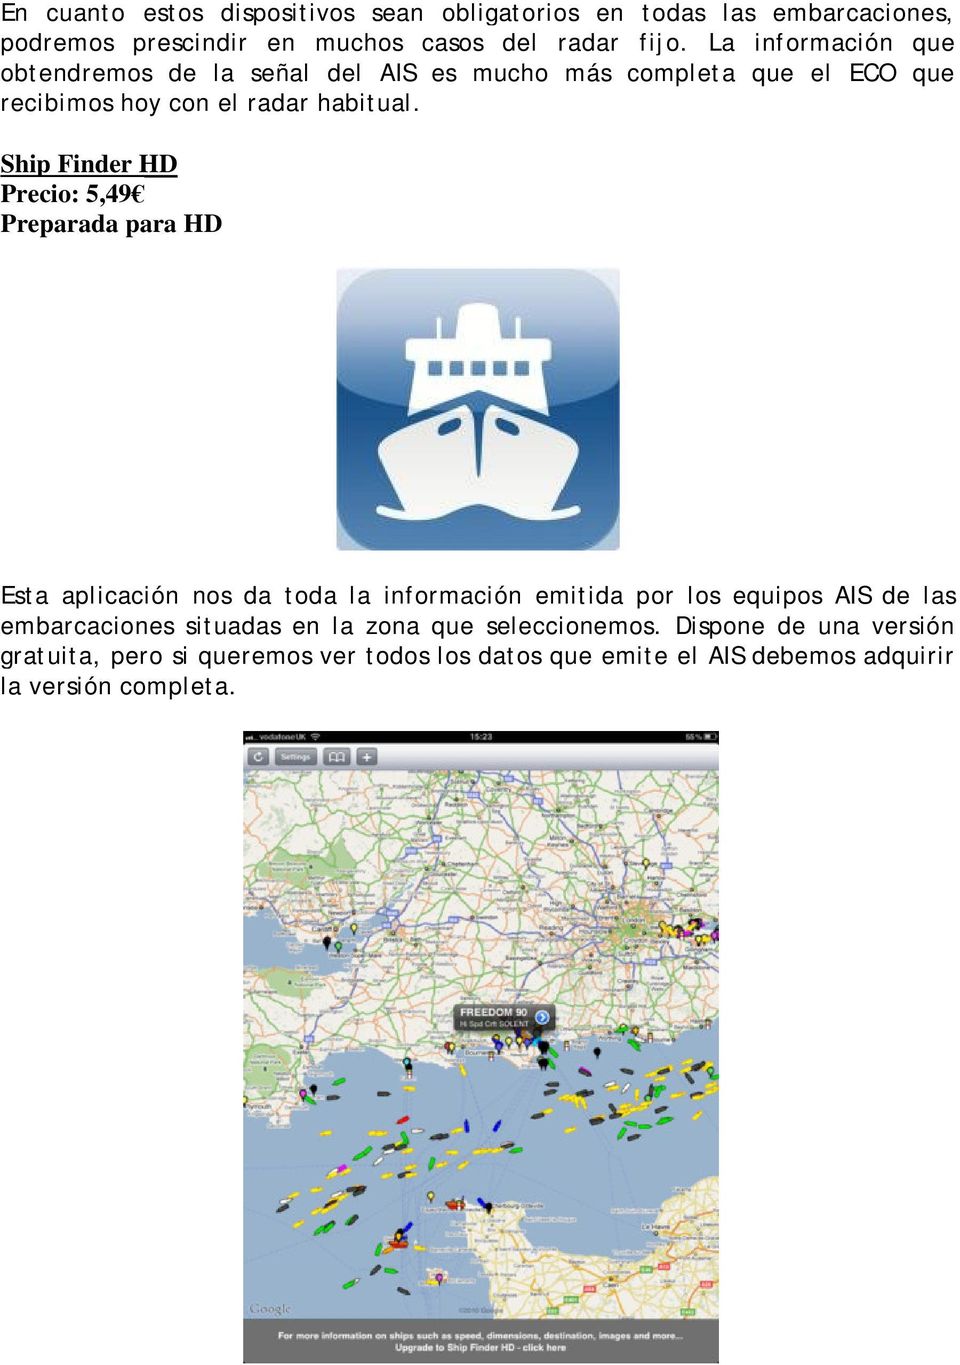 Ship Finder HD Precio: 5,49 Preparada para HD Esta aplicación nos da toda la información emitida por los equipos AIS de las embarcaciones